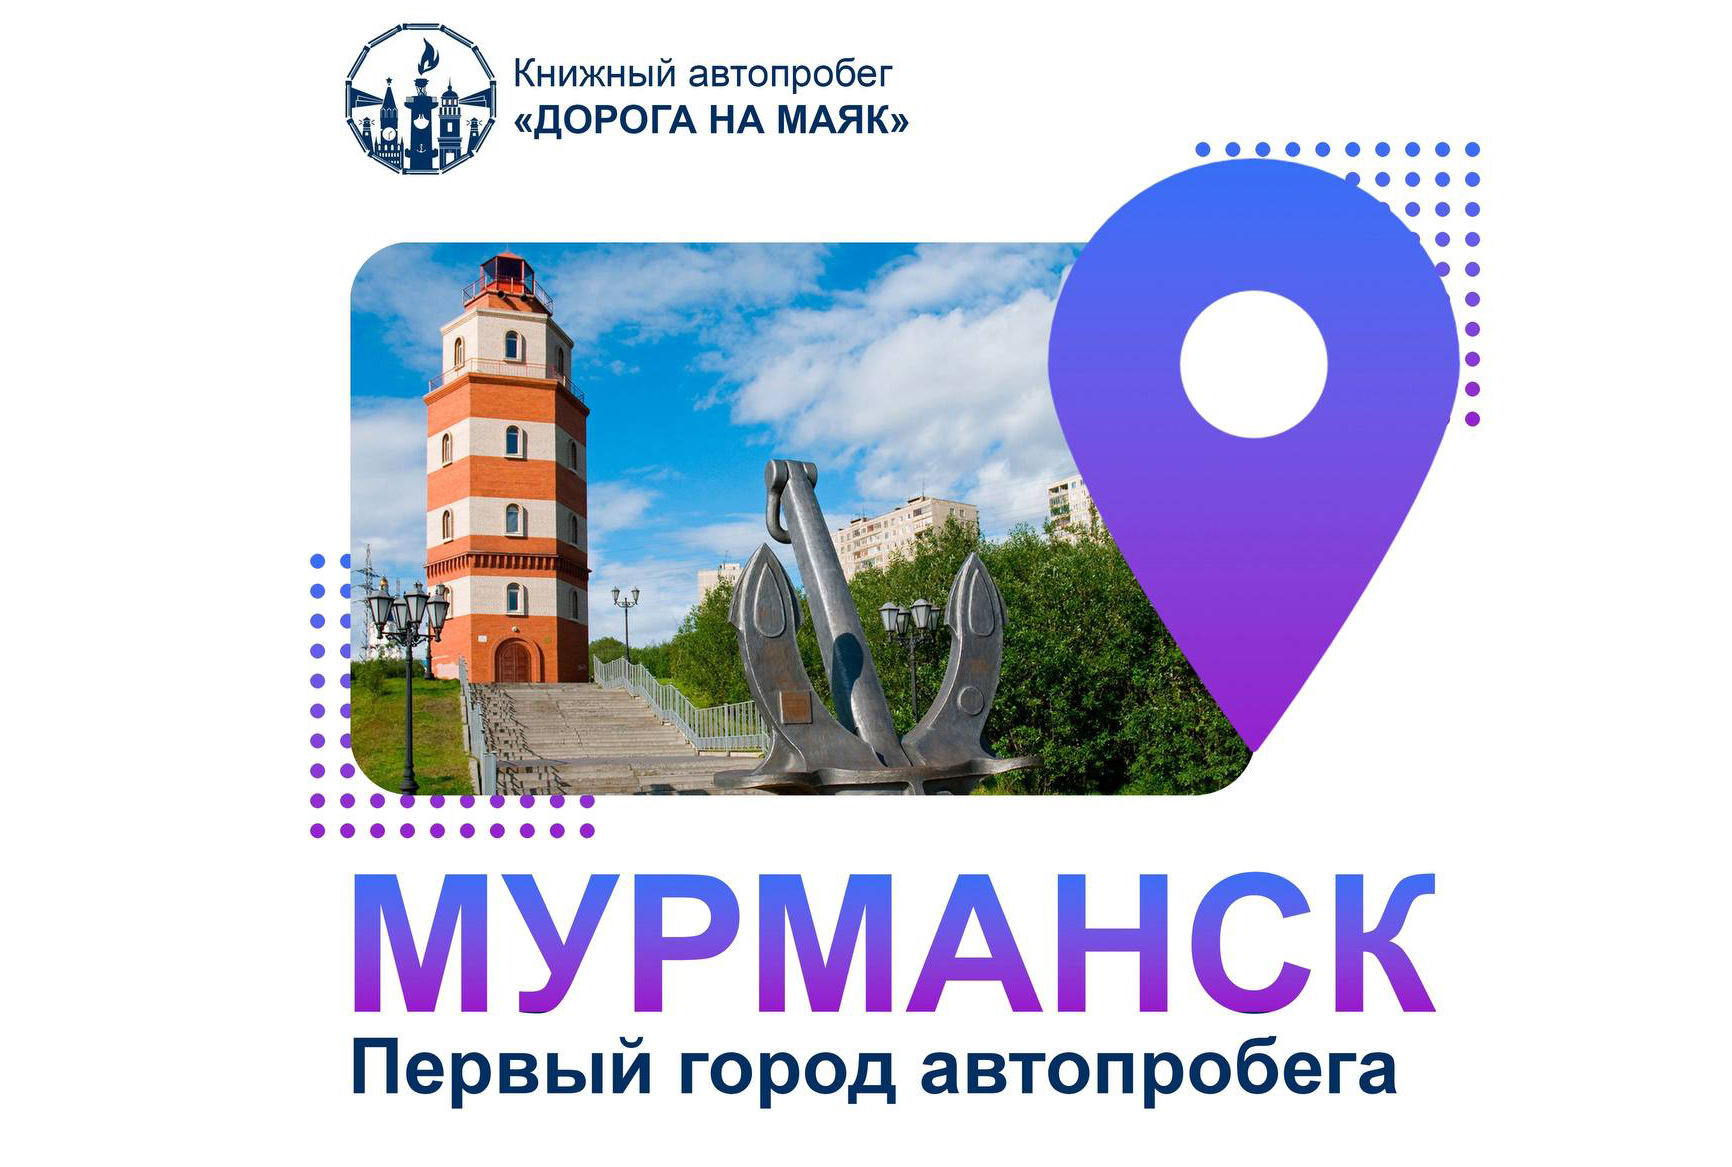 Всероссийский туристско-книжный автопробег «Дорога на маяк» стартует в Мурманске 1 августа